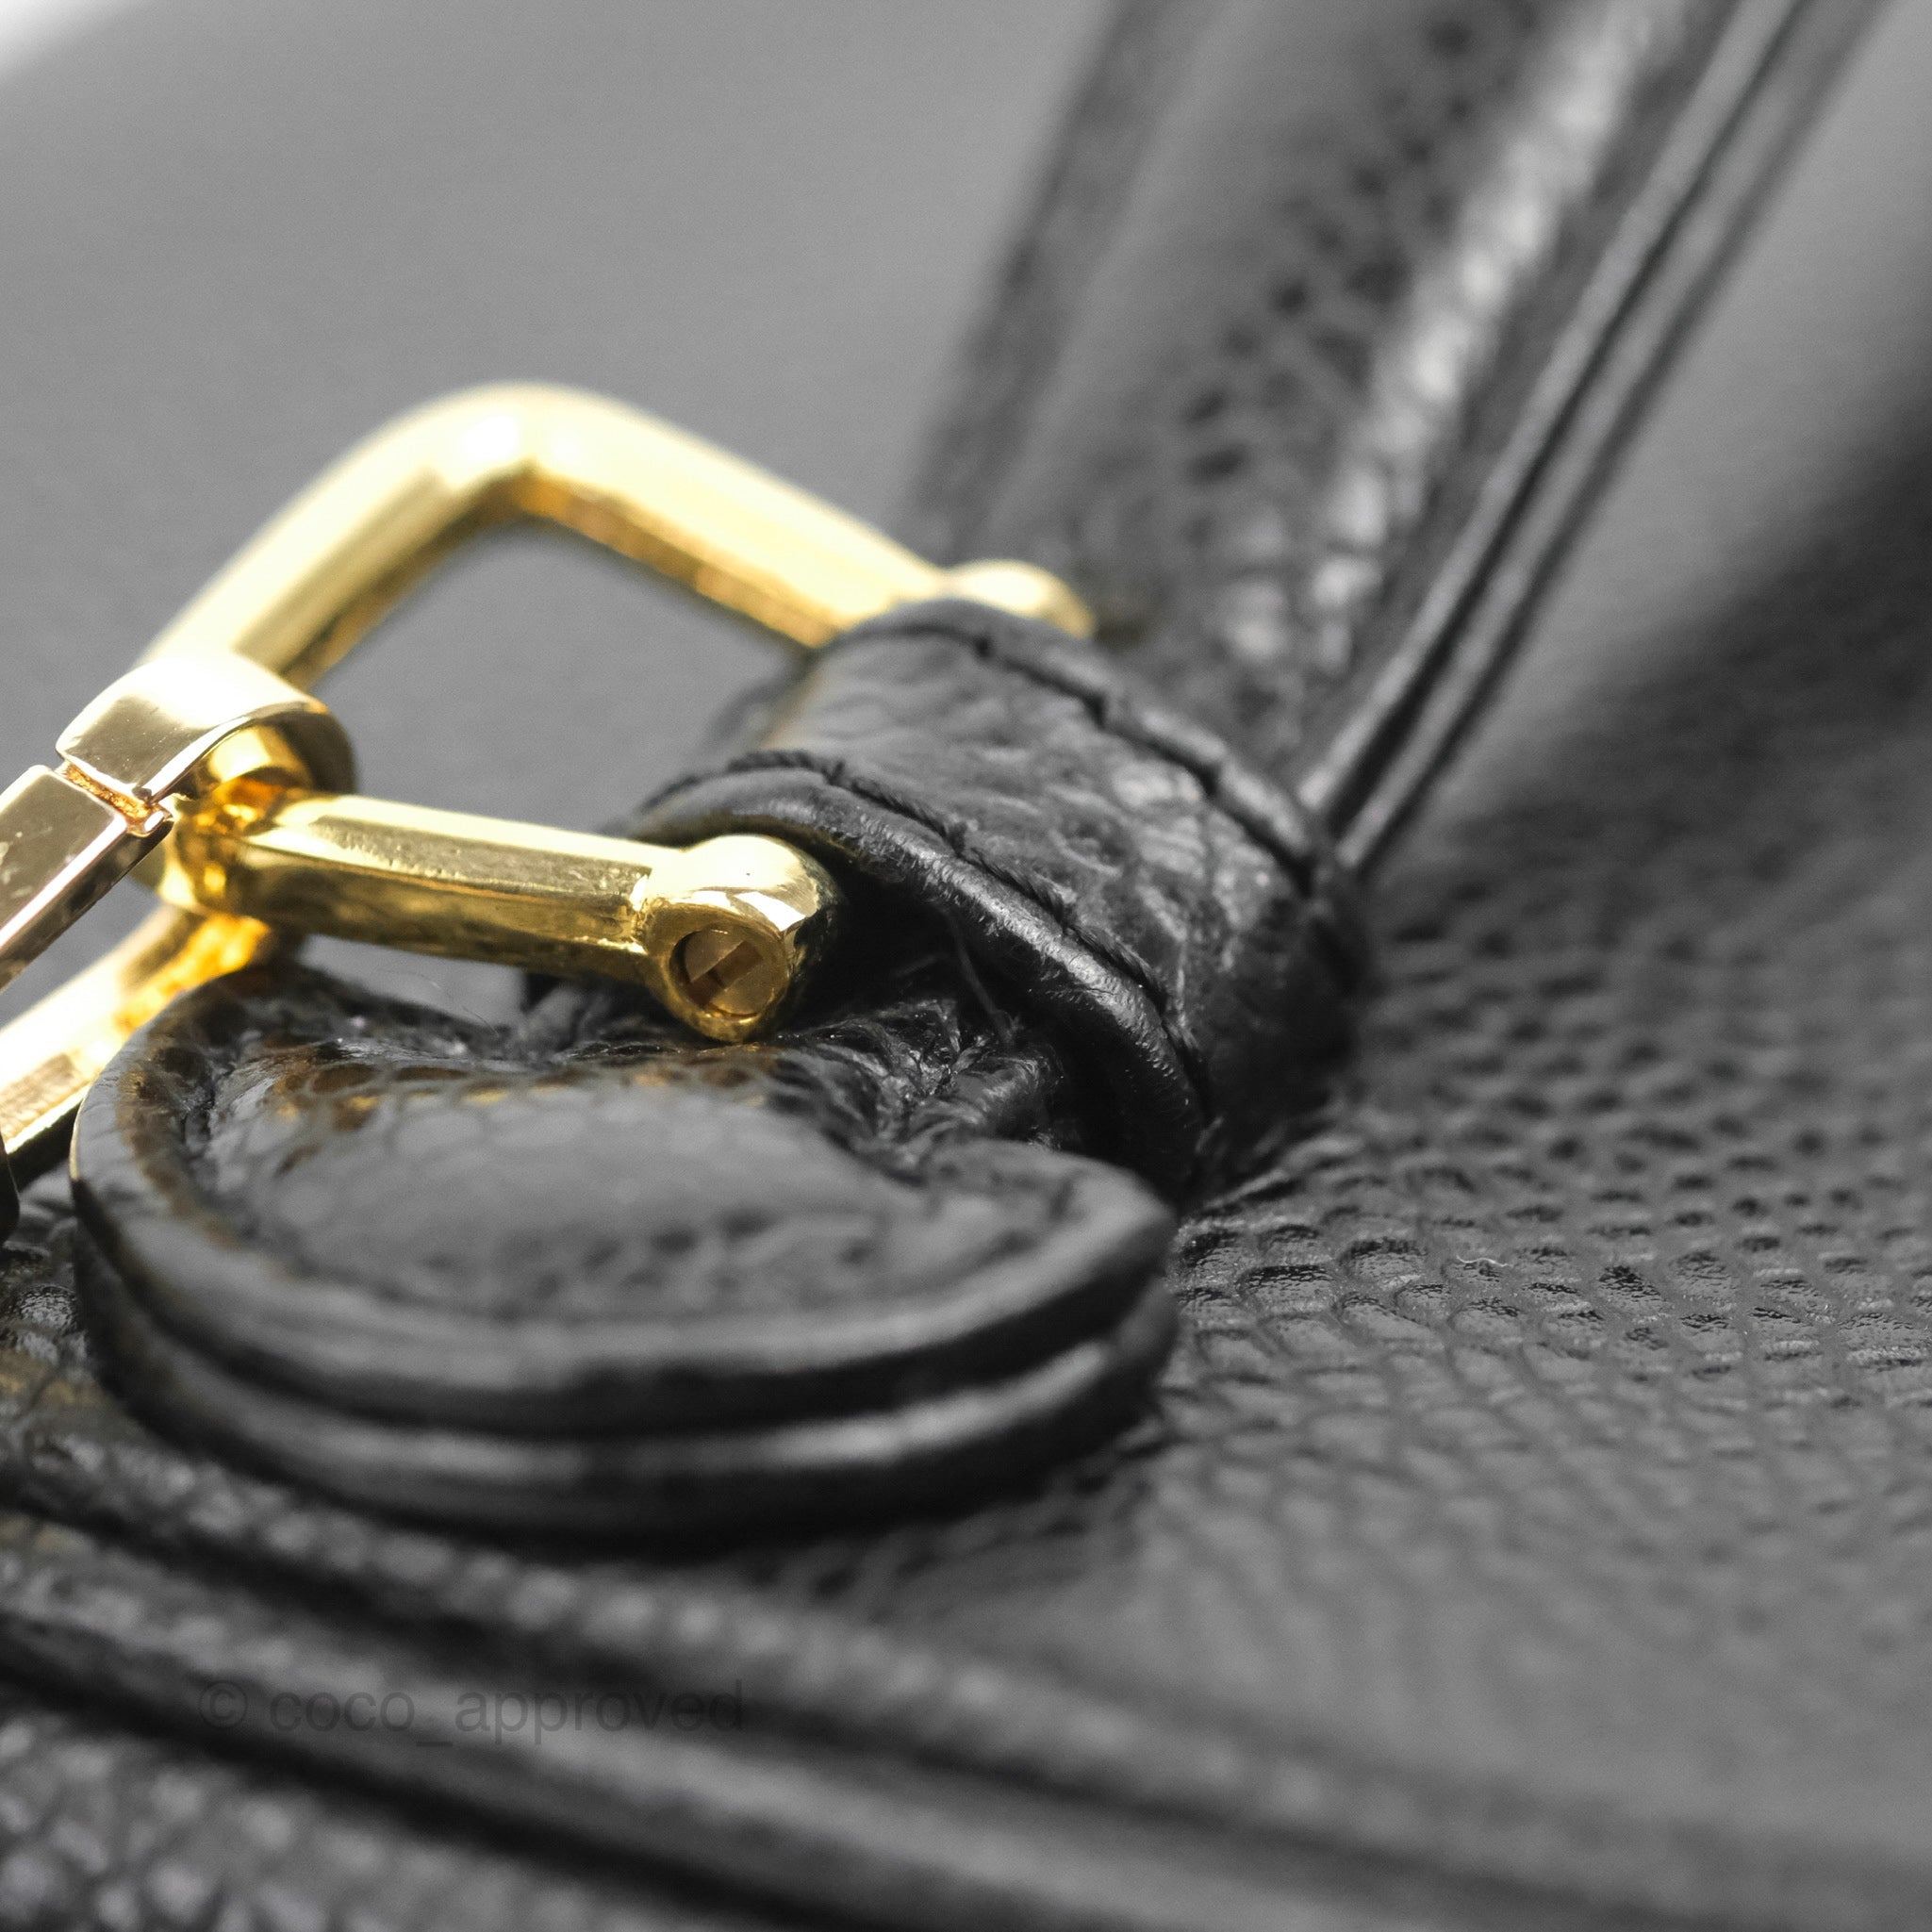 Chanel Vintage Vanity Case Black Caviar Gold Hardware – Coco